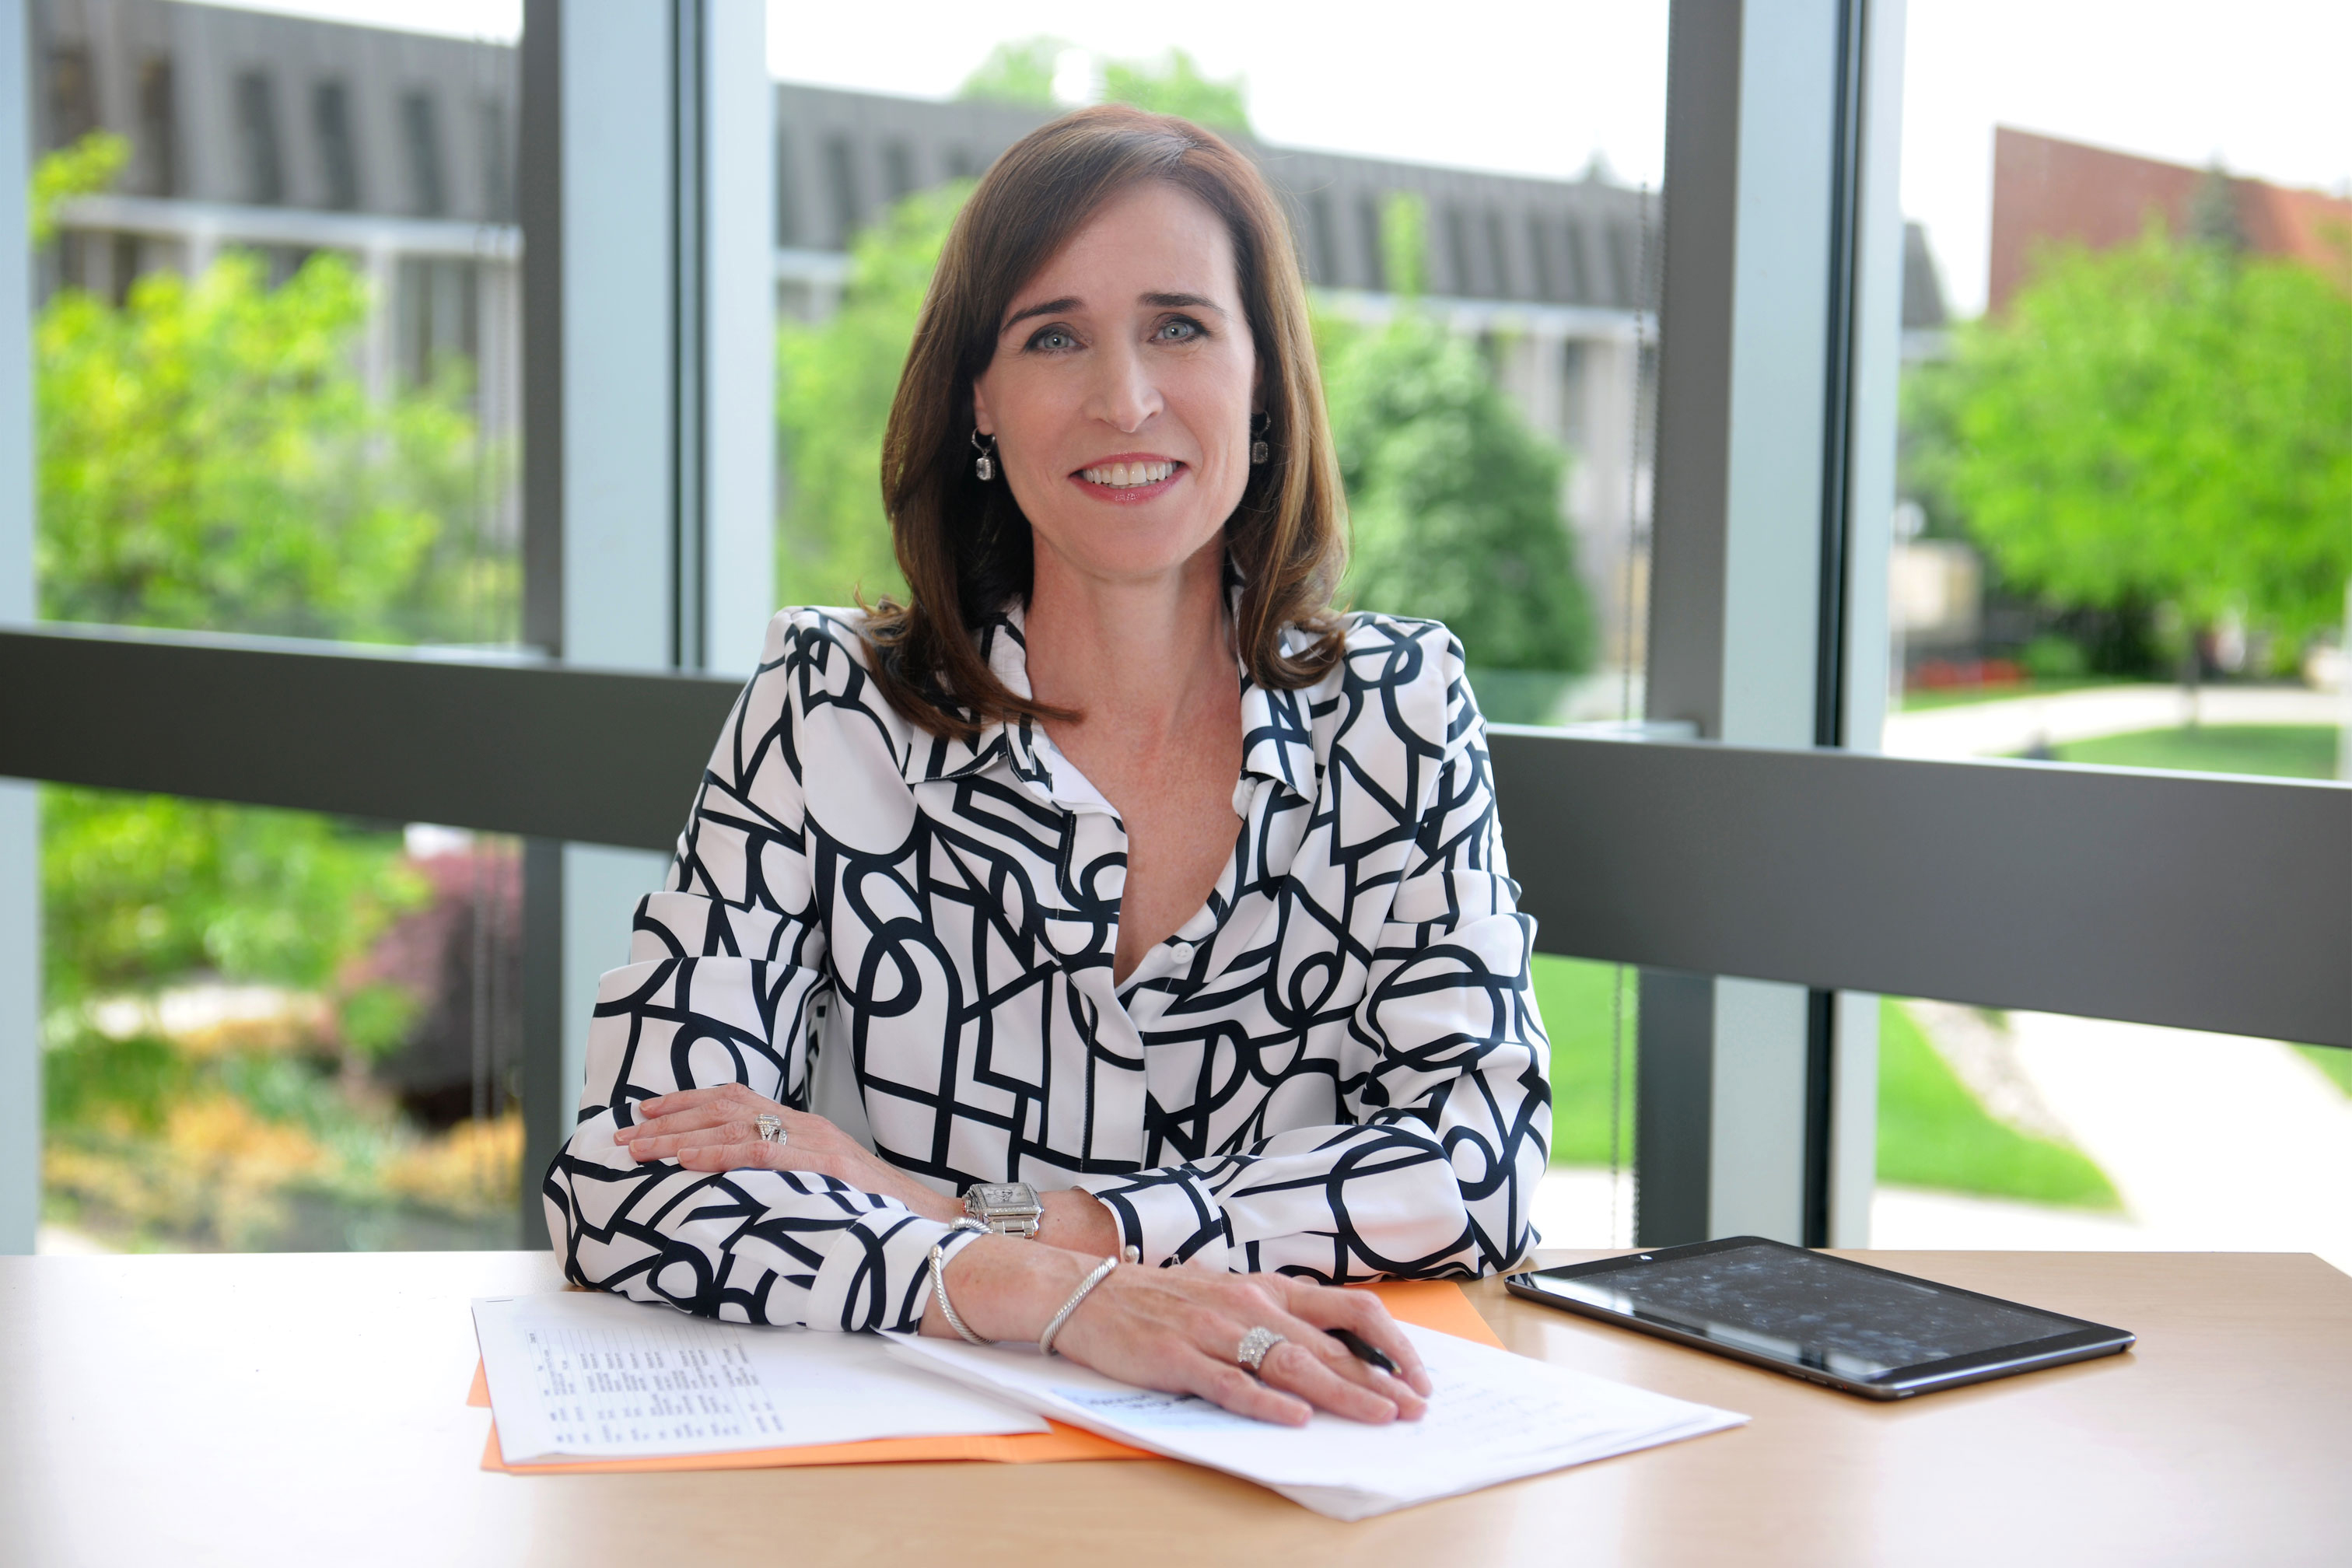 Dr. Christine Riordan is the President of Adelphi University in New York.